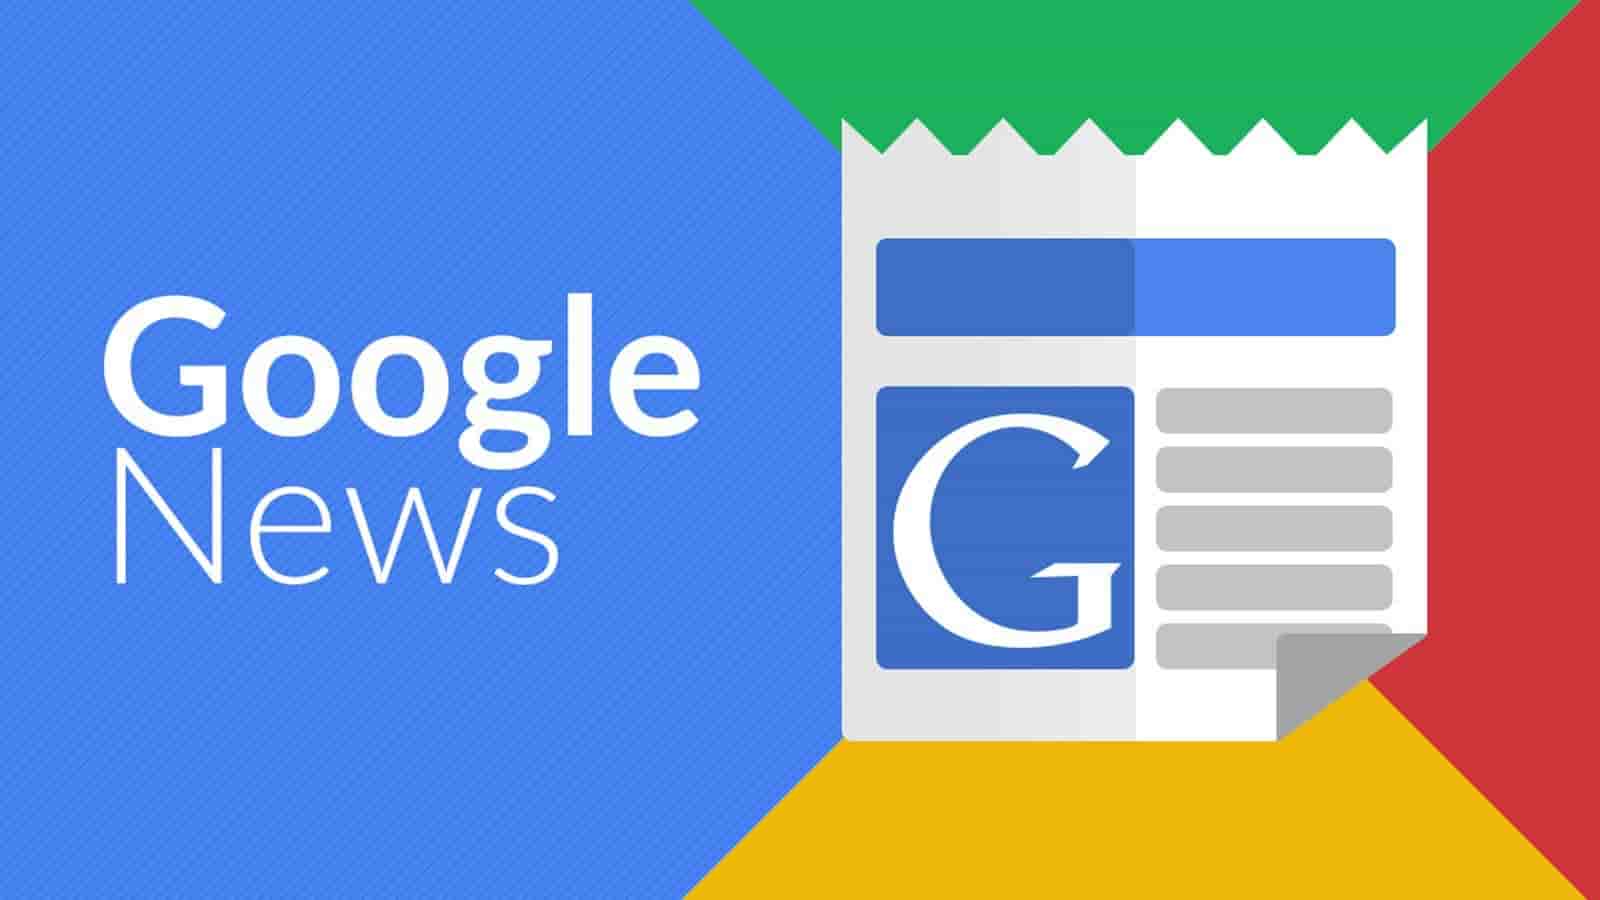 Google News Come Posizionarsi e Ottenere Visibilità